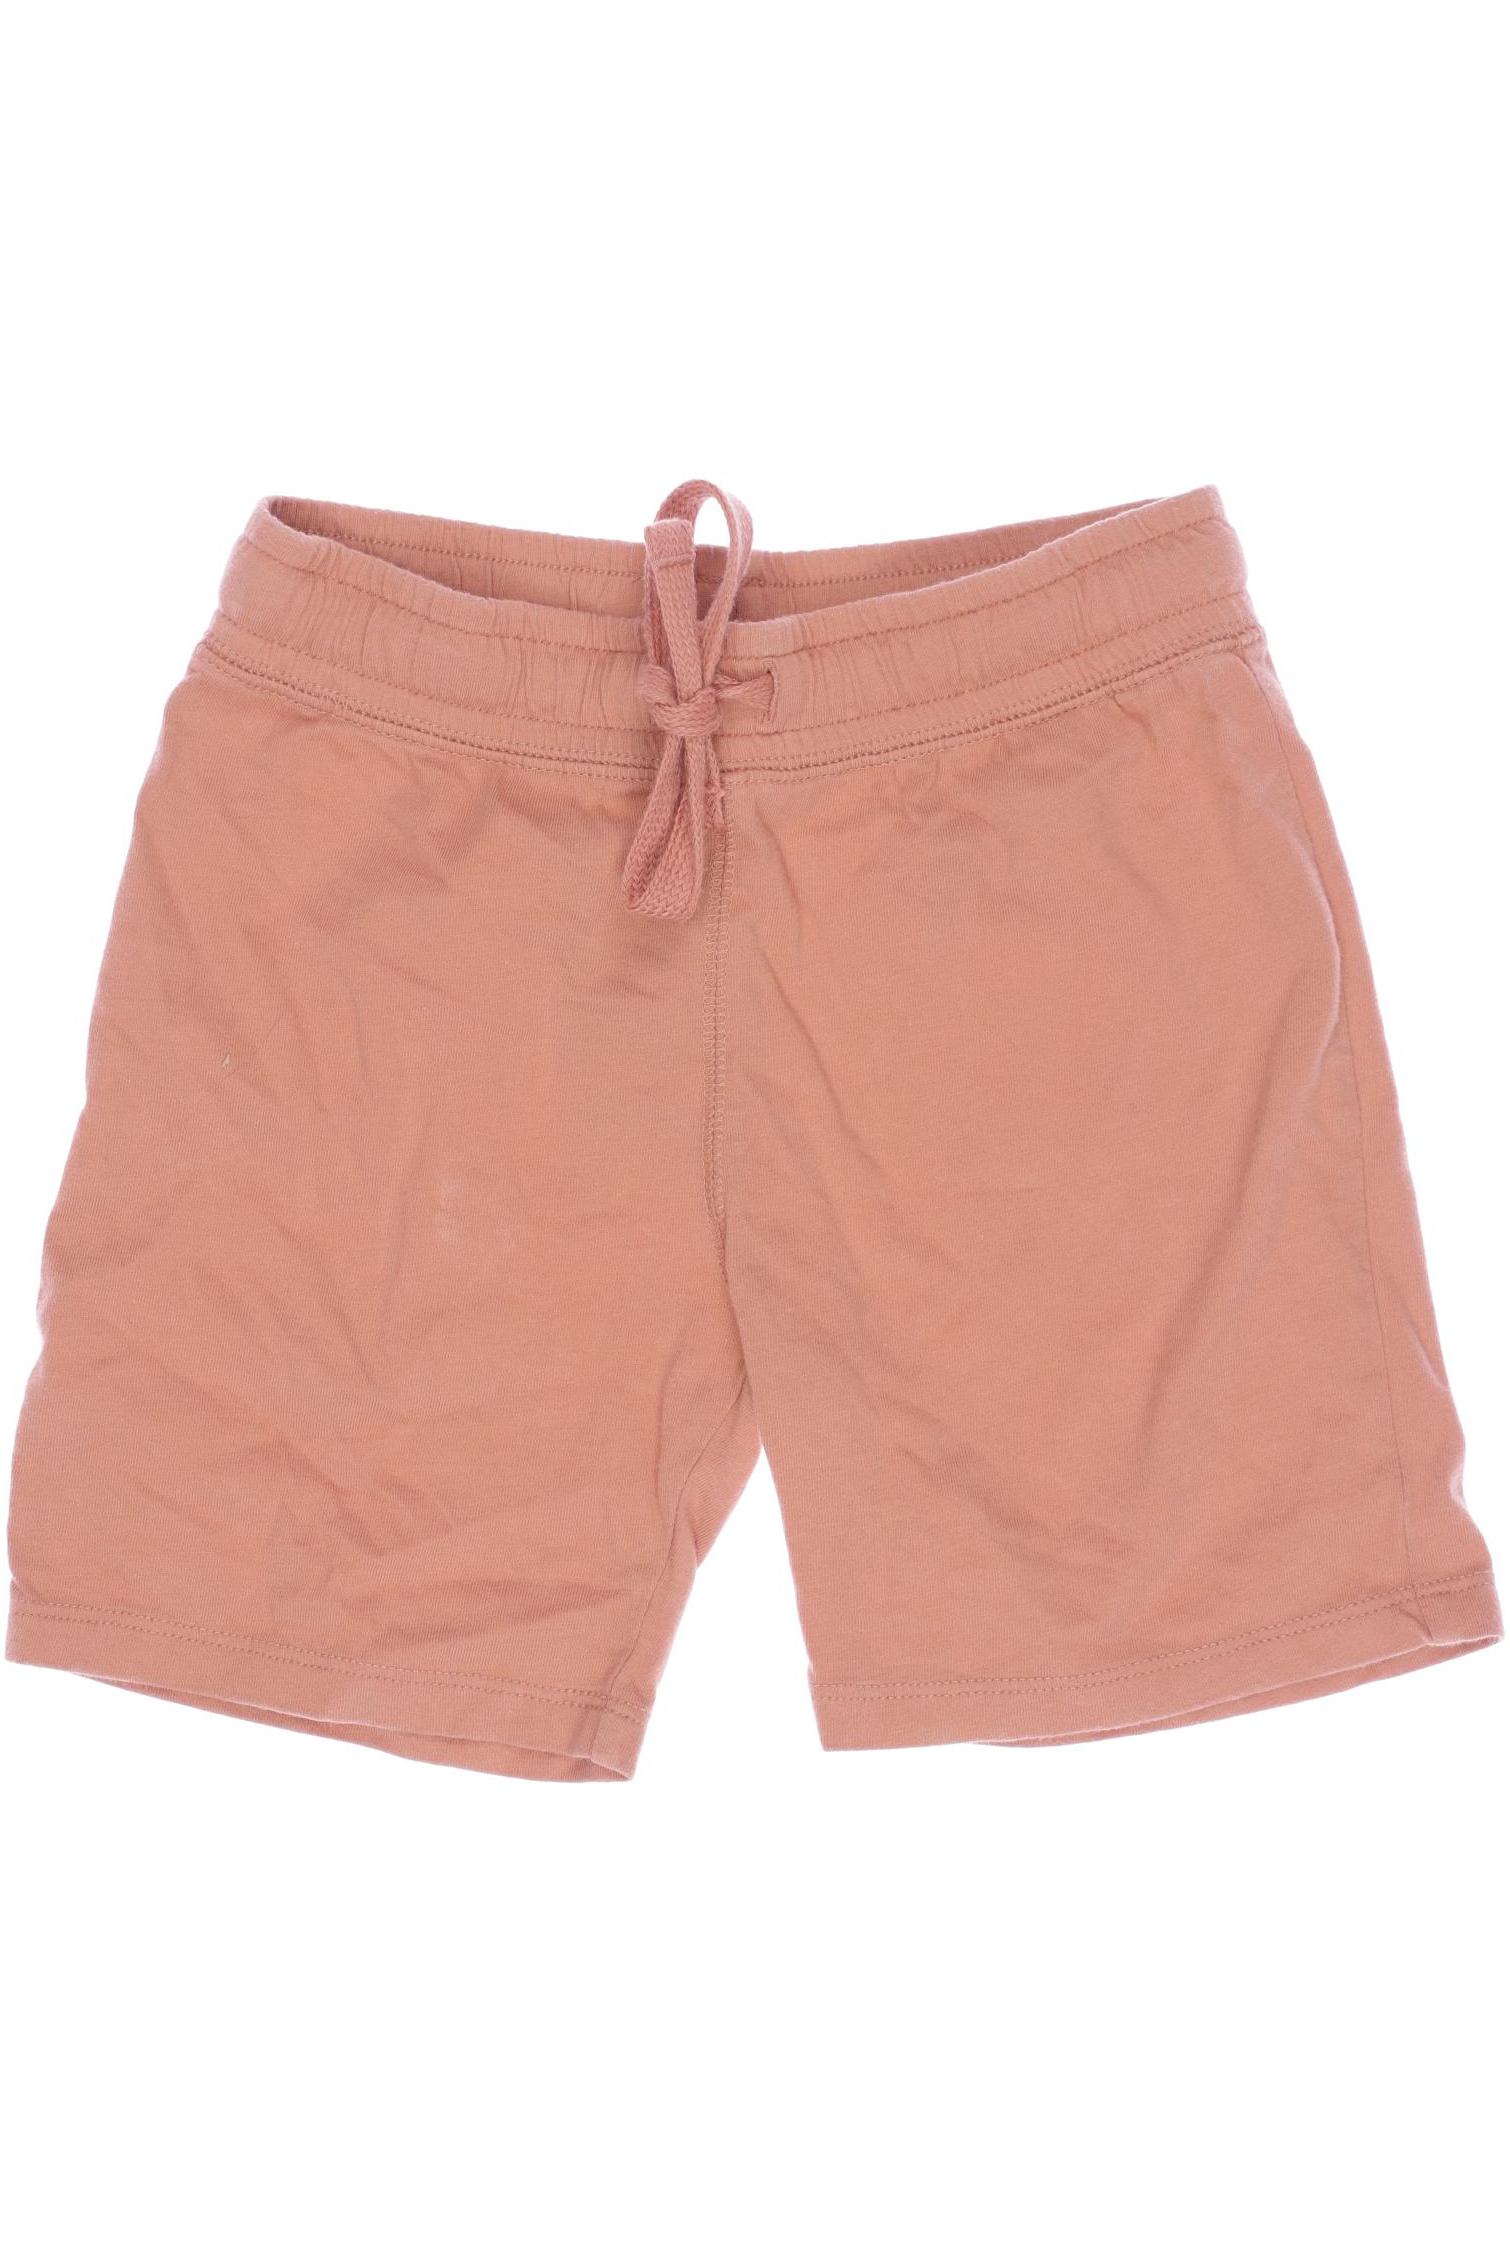 H&M Herren Shorts, pink, Gr. 104 von H&M